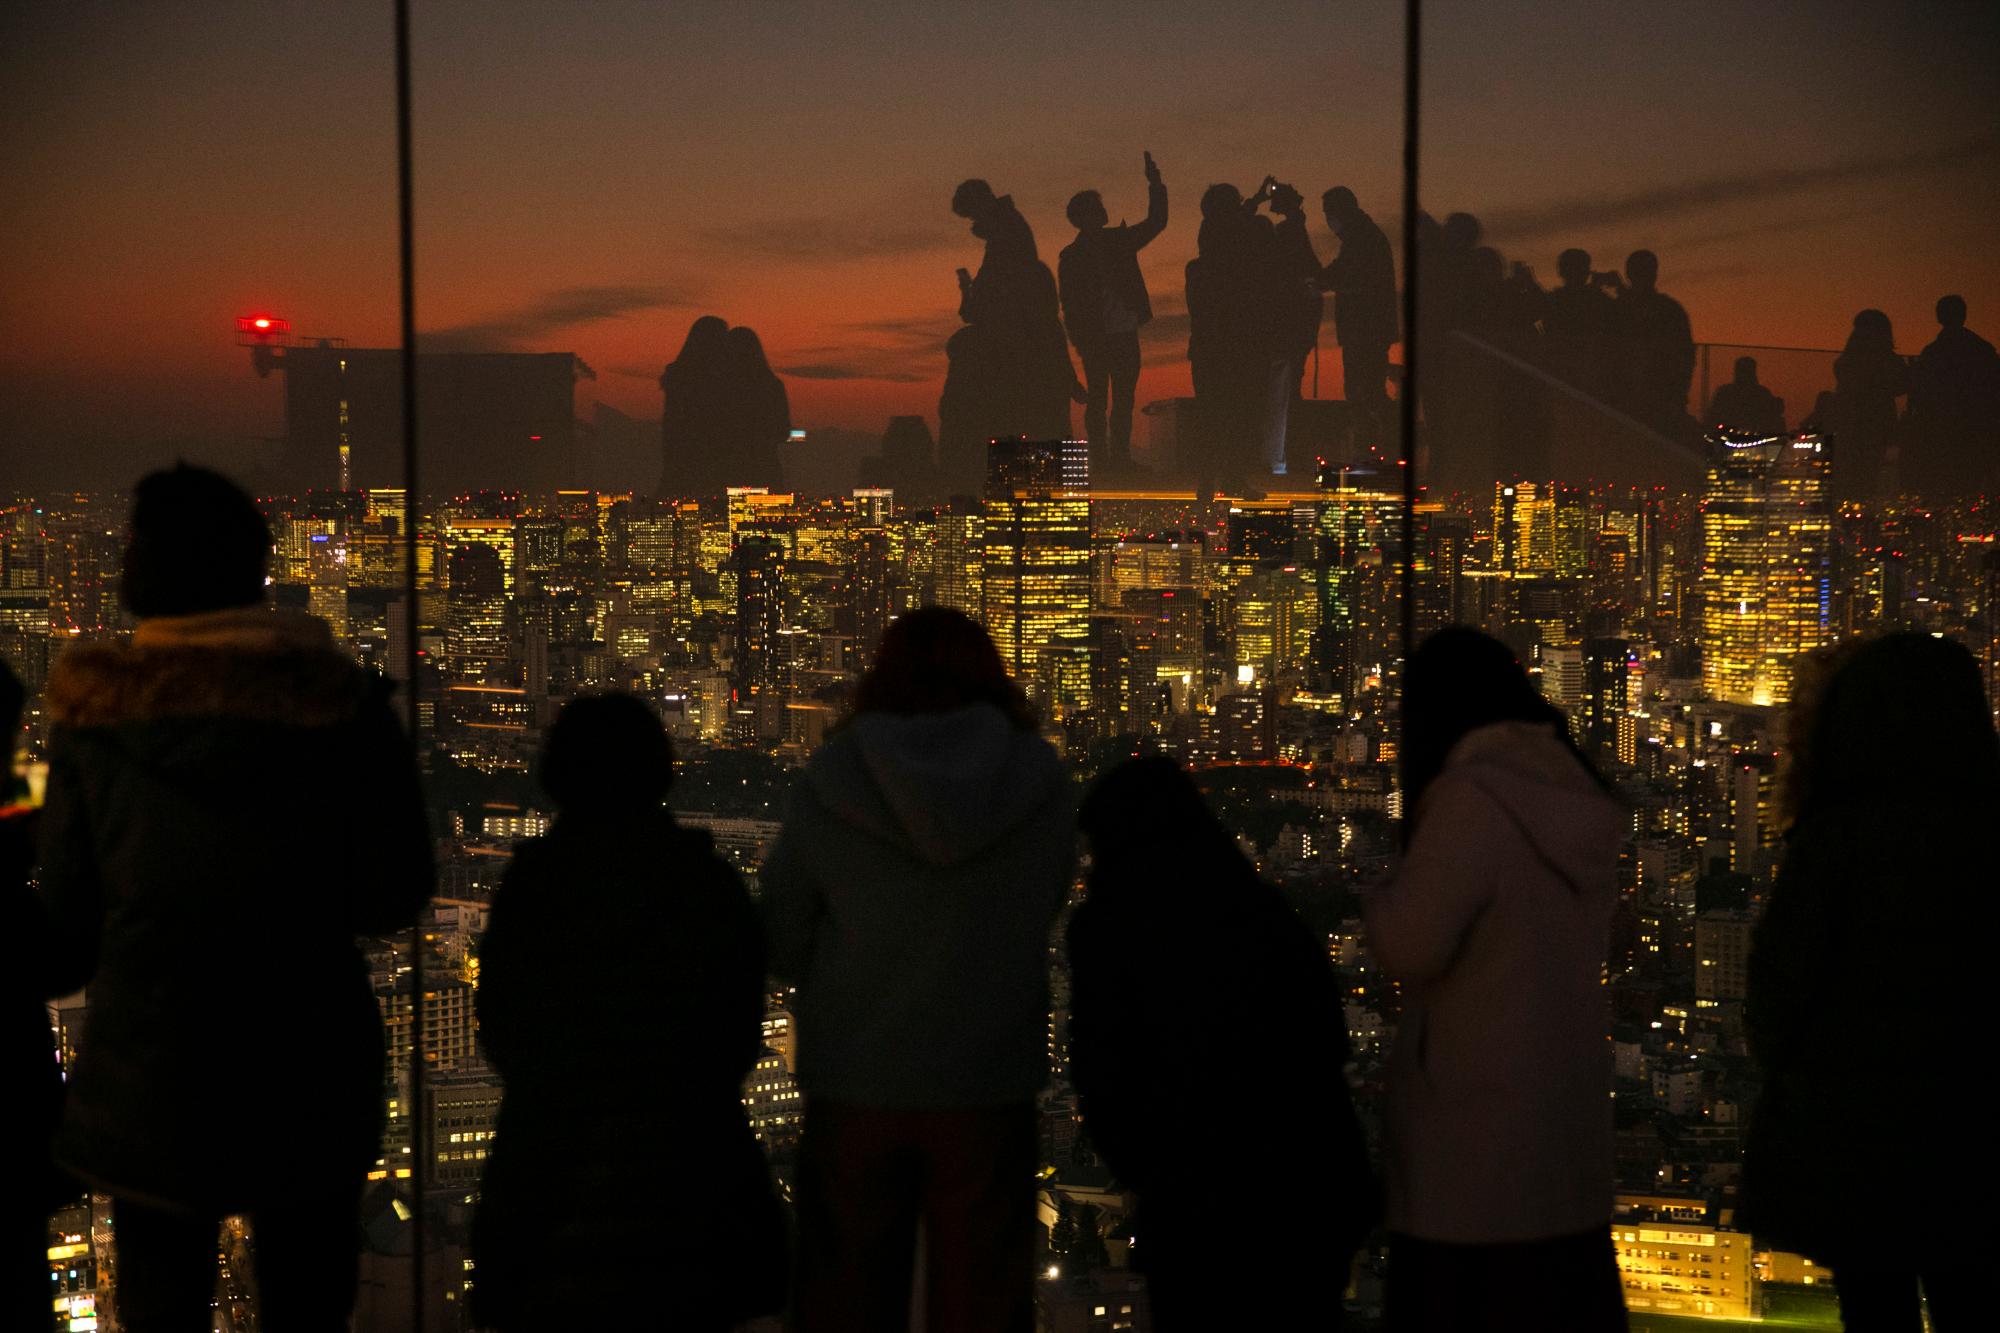 Silueteados contra la puesta de sol, los visitantes se reflejan en las paredes de vidrio de la plataforma de observación Shibuya Sky el lunes 20 de enero de 2020 en Tokio. Ubicado en la azotea de Shibuya Scramble Square, un rascacielos de 47 pisos, el observatorio es la plataforma de observación al aire libre más nueva de Tokio, con vistas al famoso cruce de Shibuya.